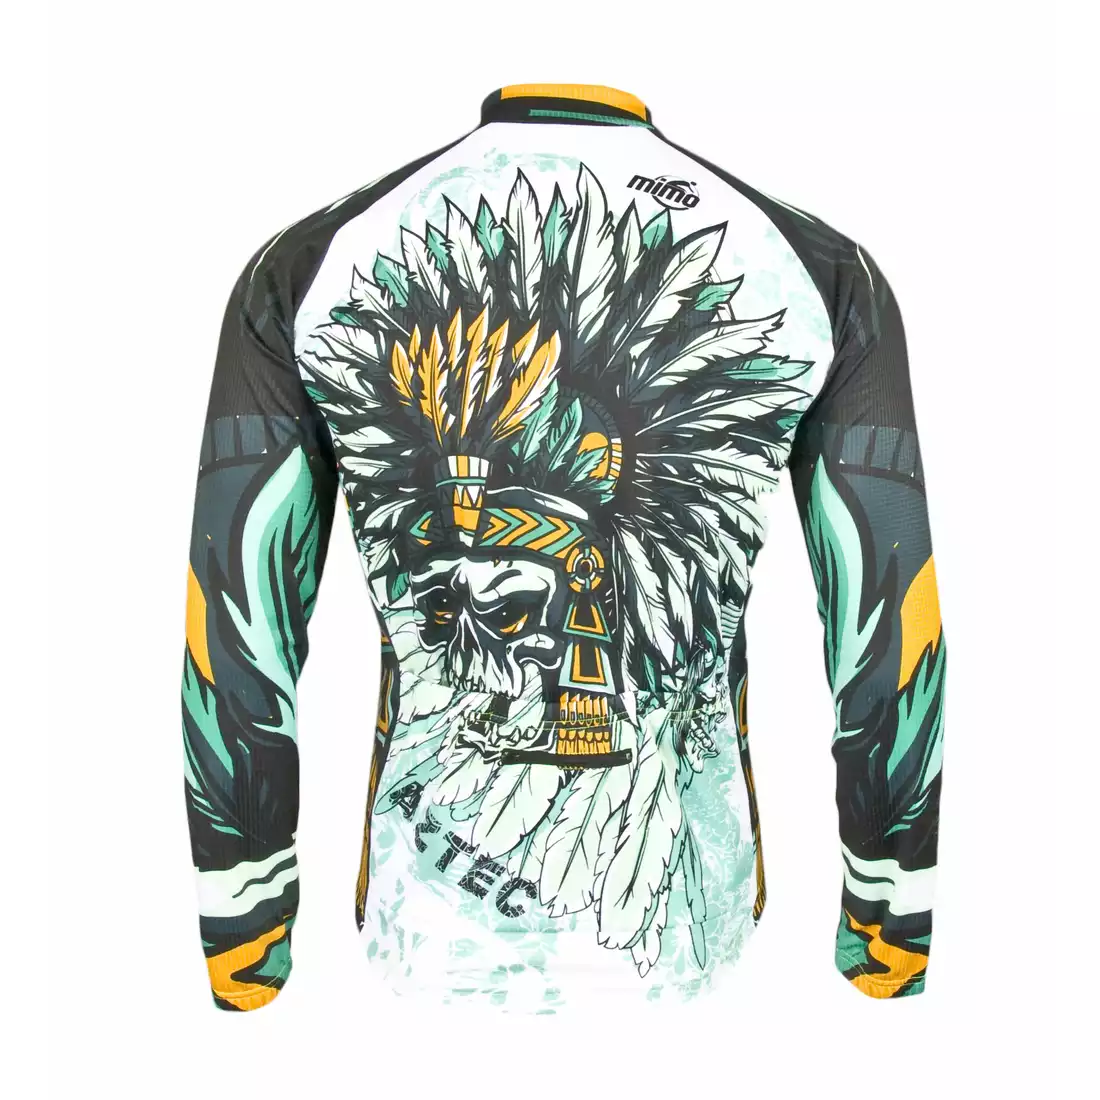 MikeSPORT DESIGN AZTEC męska bluza rowerowa